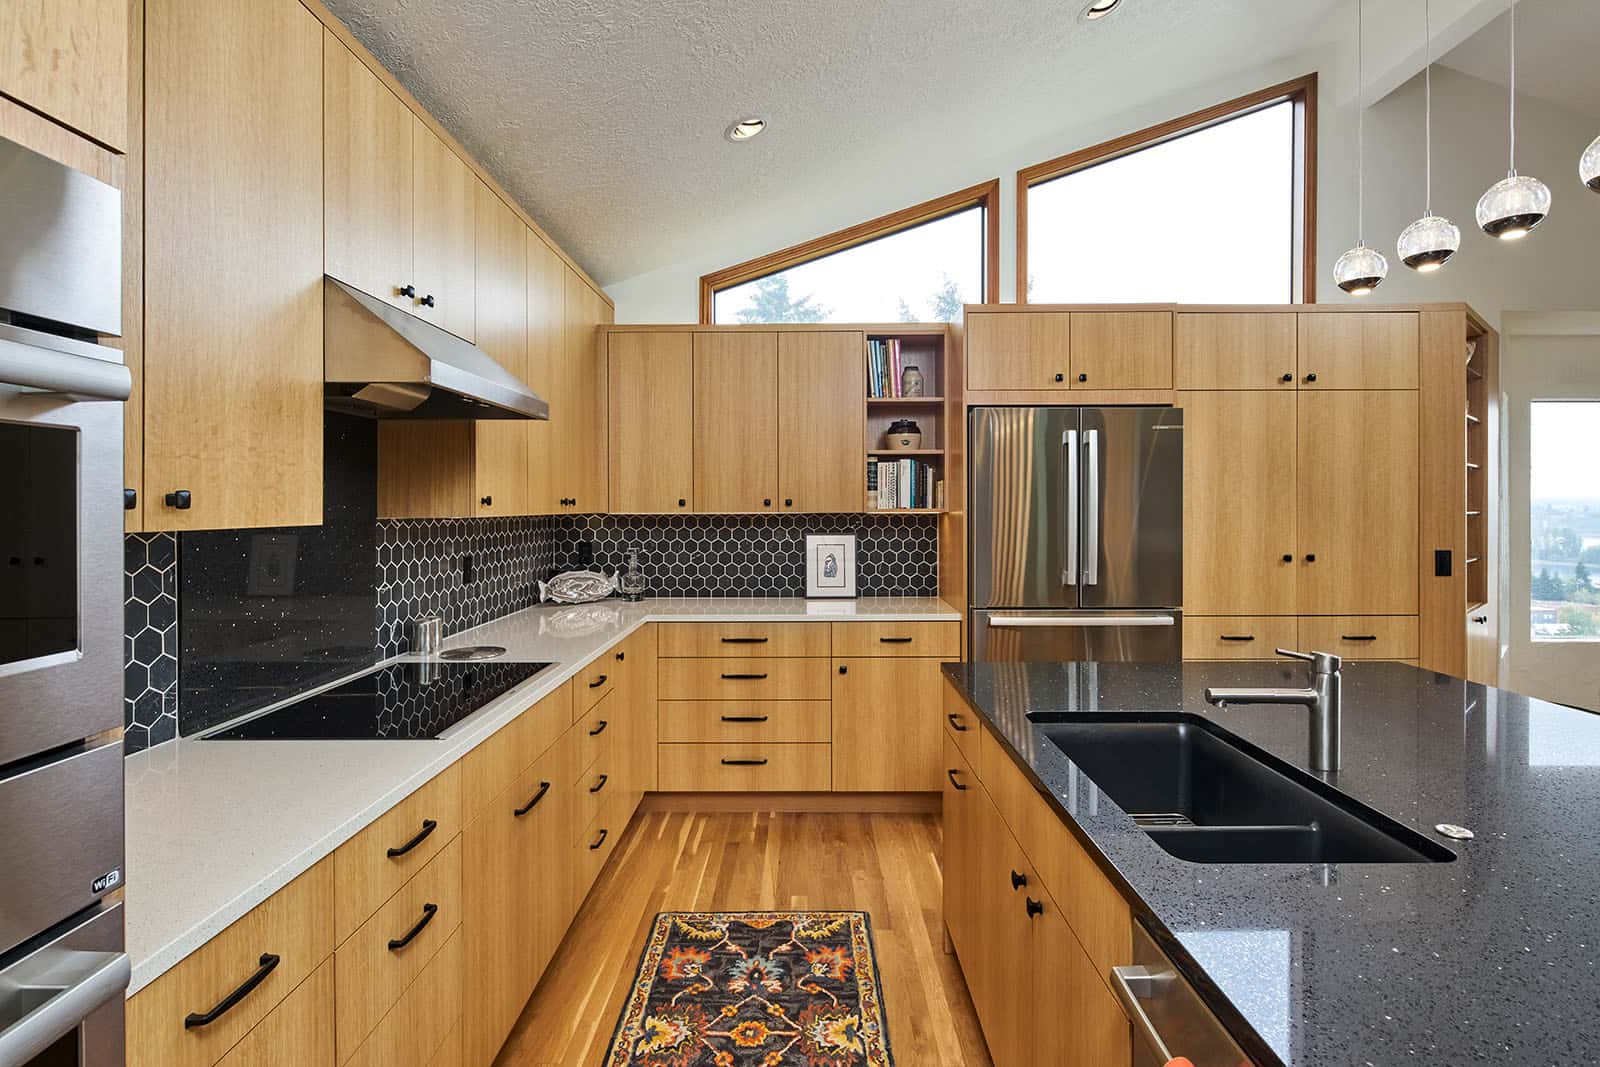 White Oak Kitchen Cabinets in a remodel by Neil Kelly in Portland, Oregon